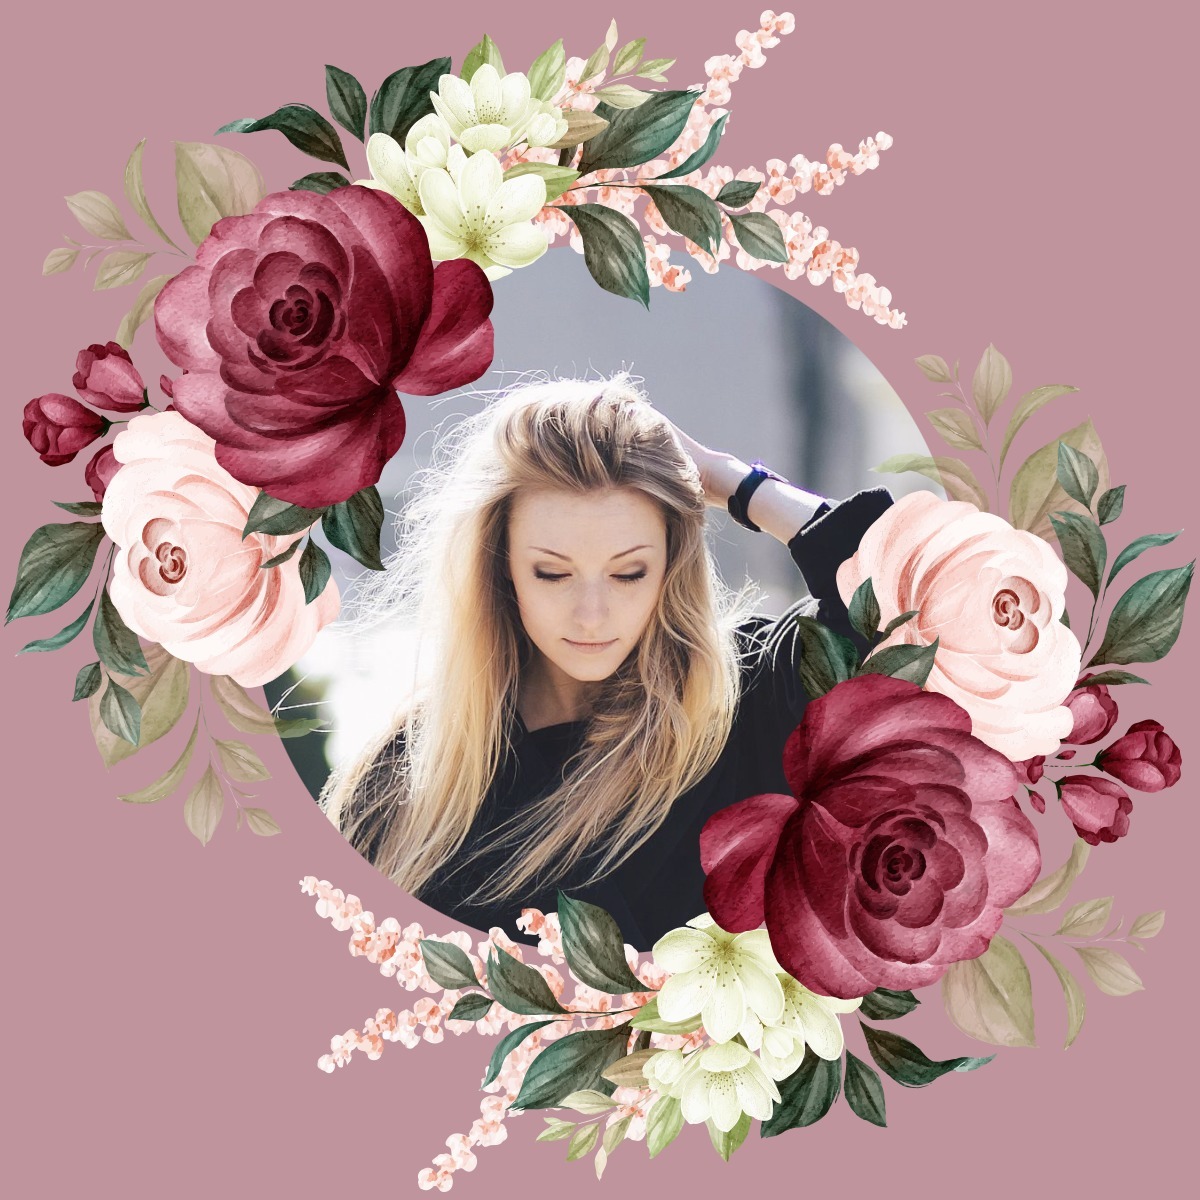 Mawar merah muda Photomontage